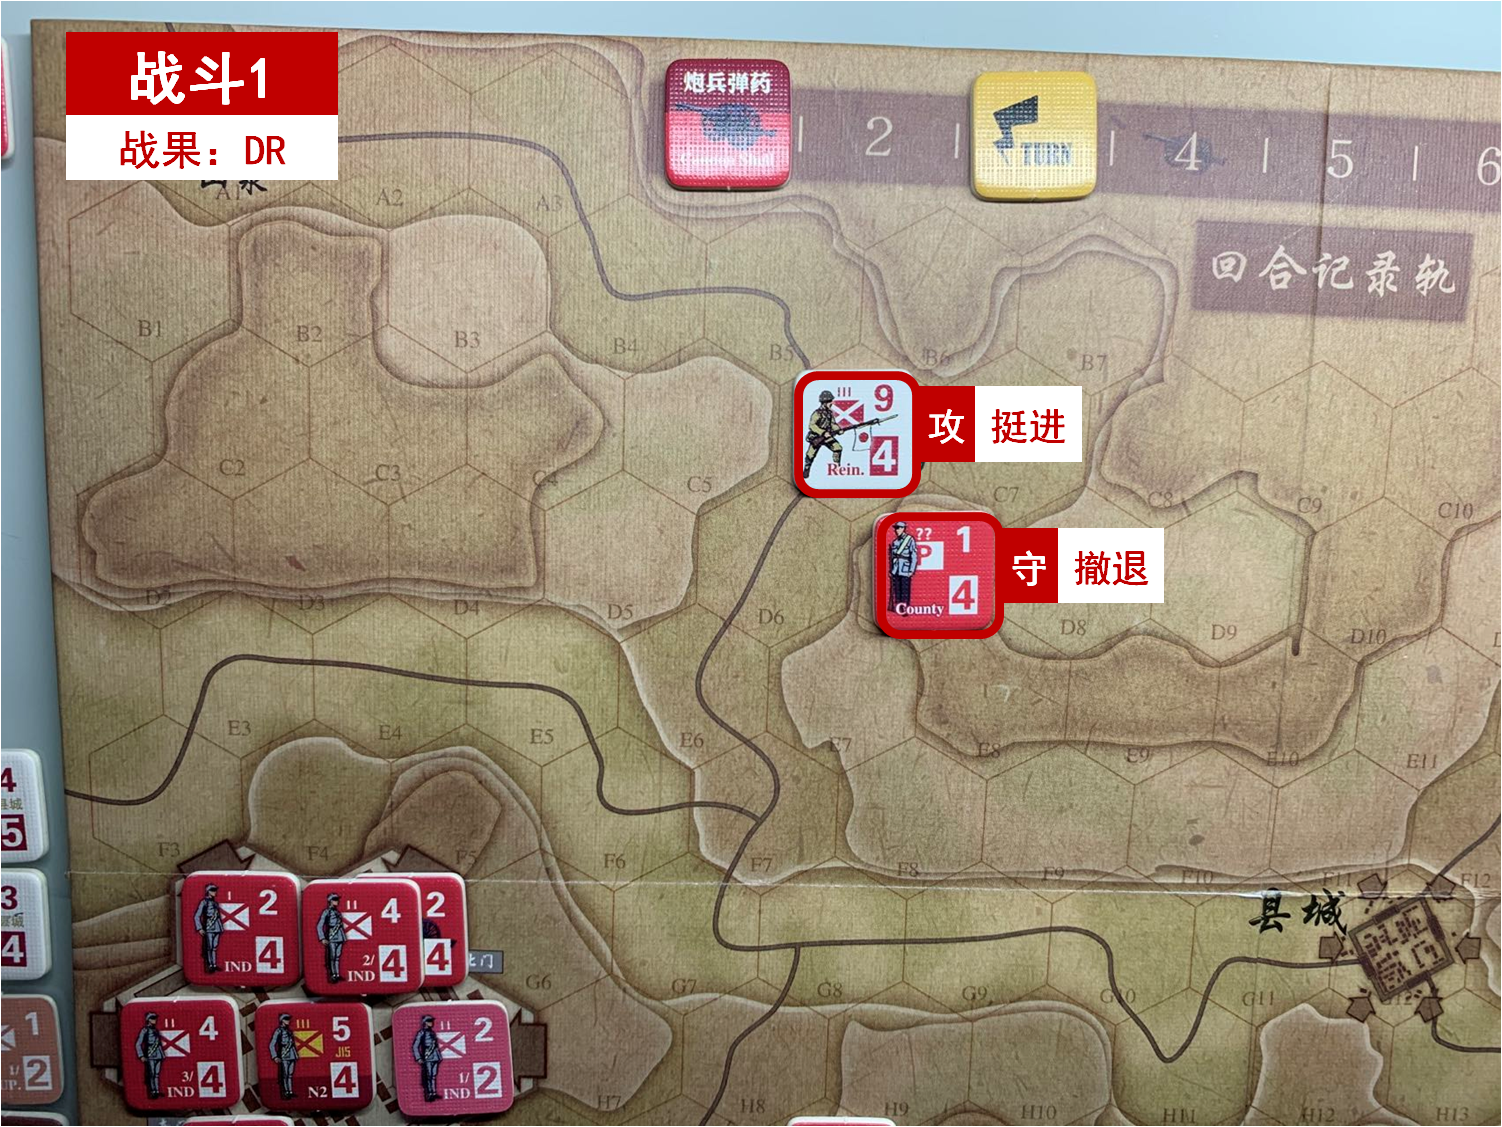 第三回合 日方戰鬥階段 戰鬥1 戰鬥結果